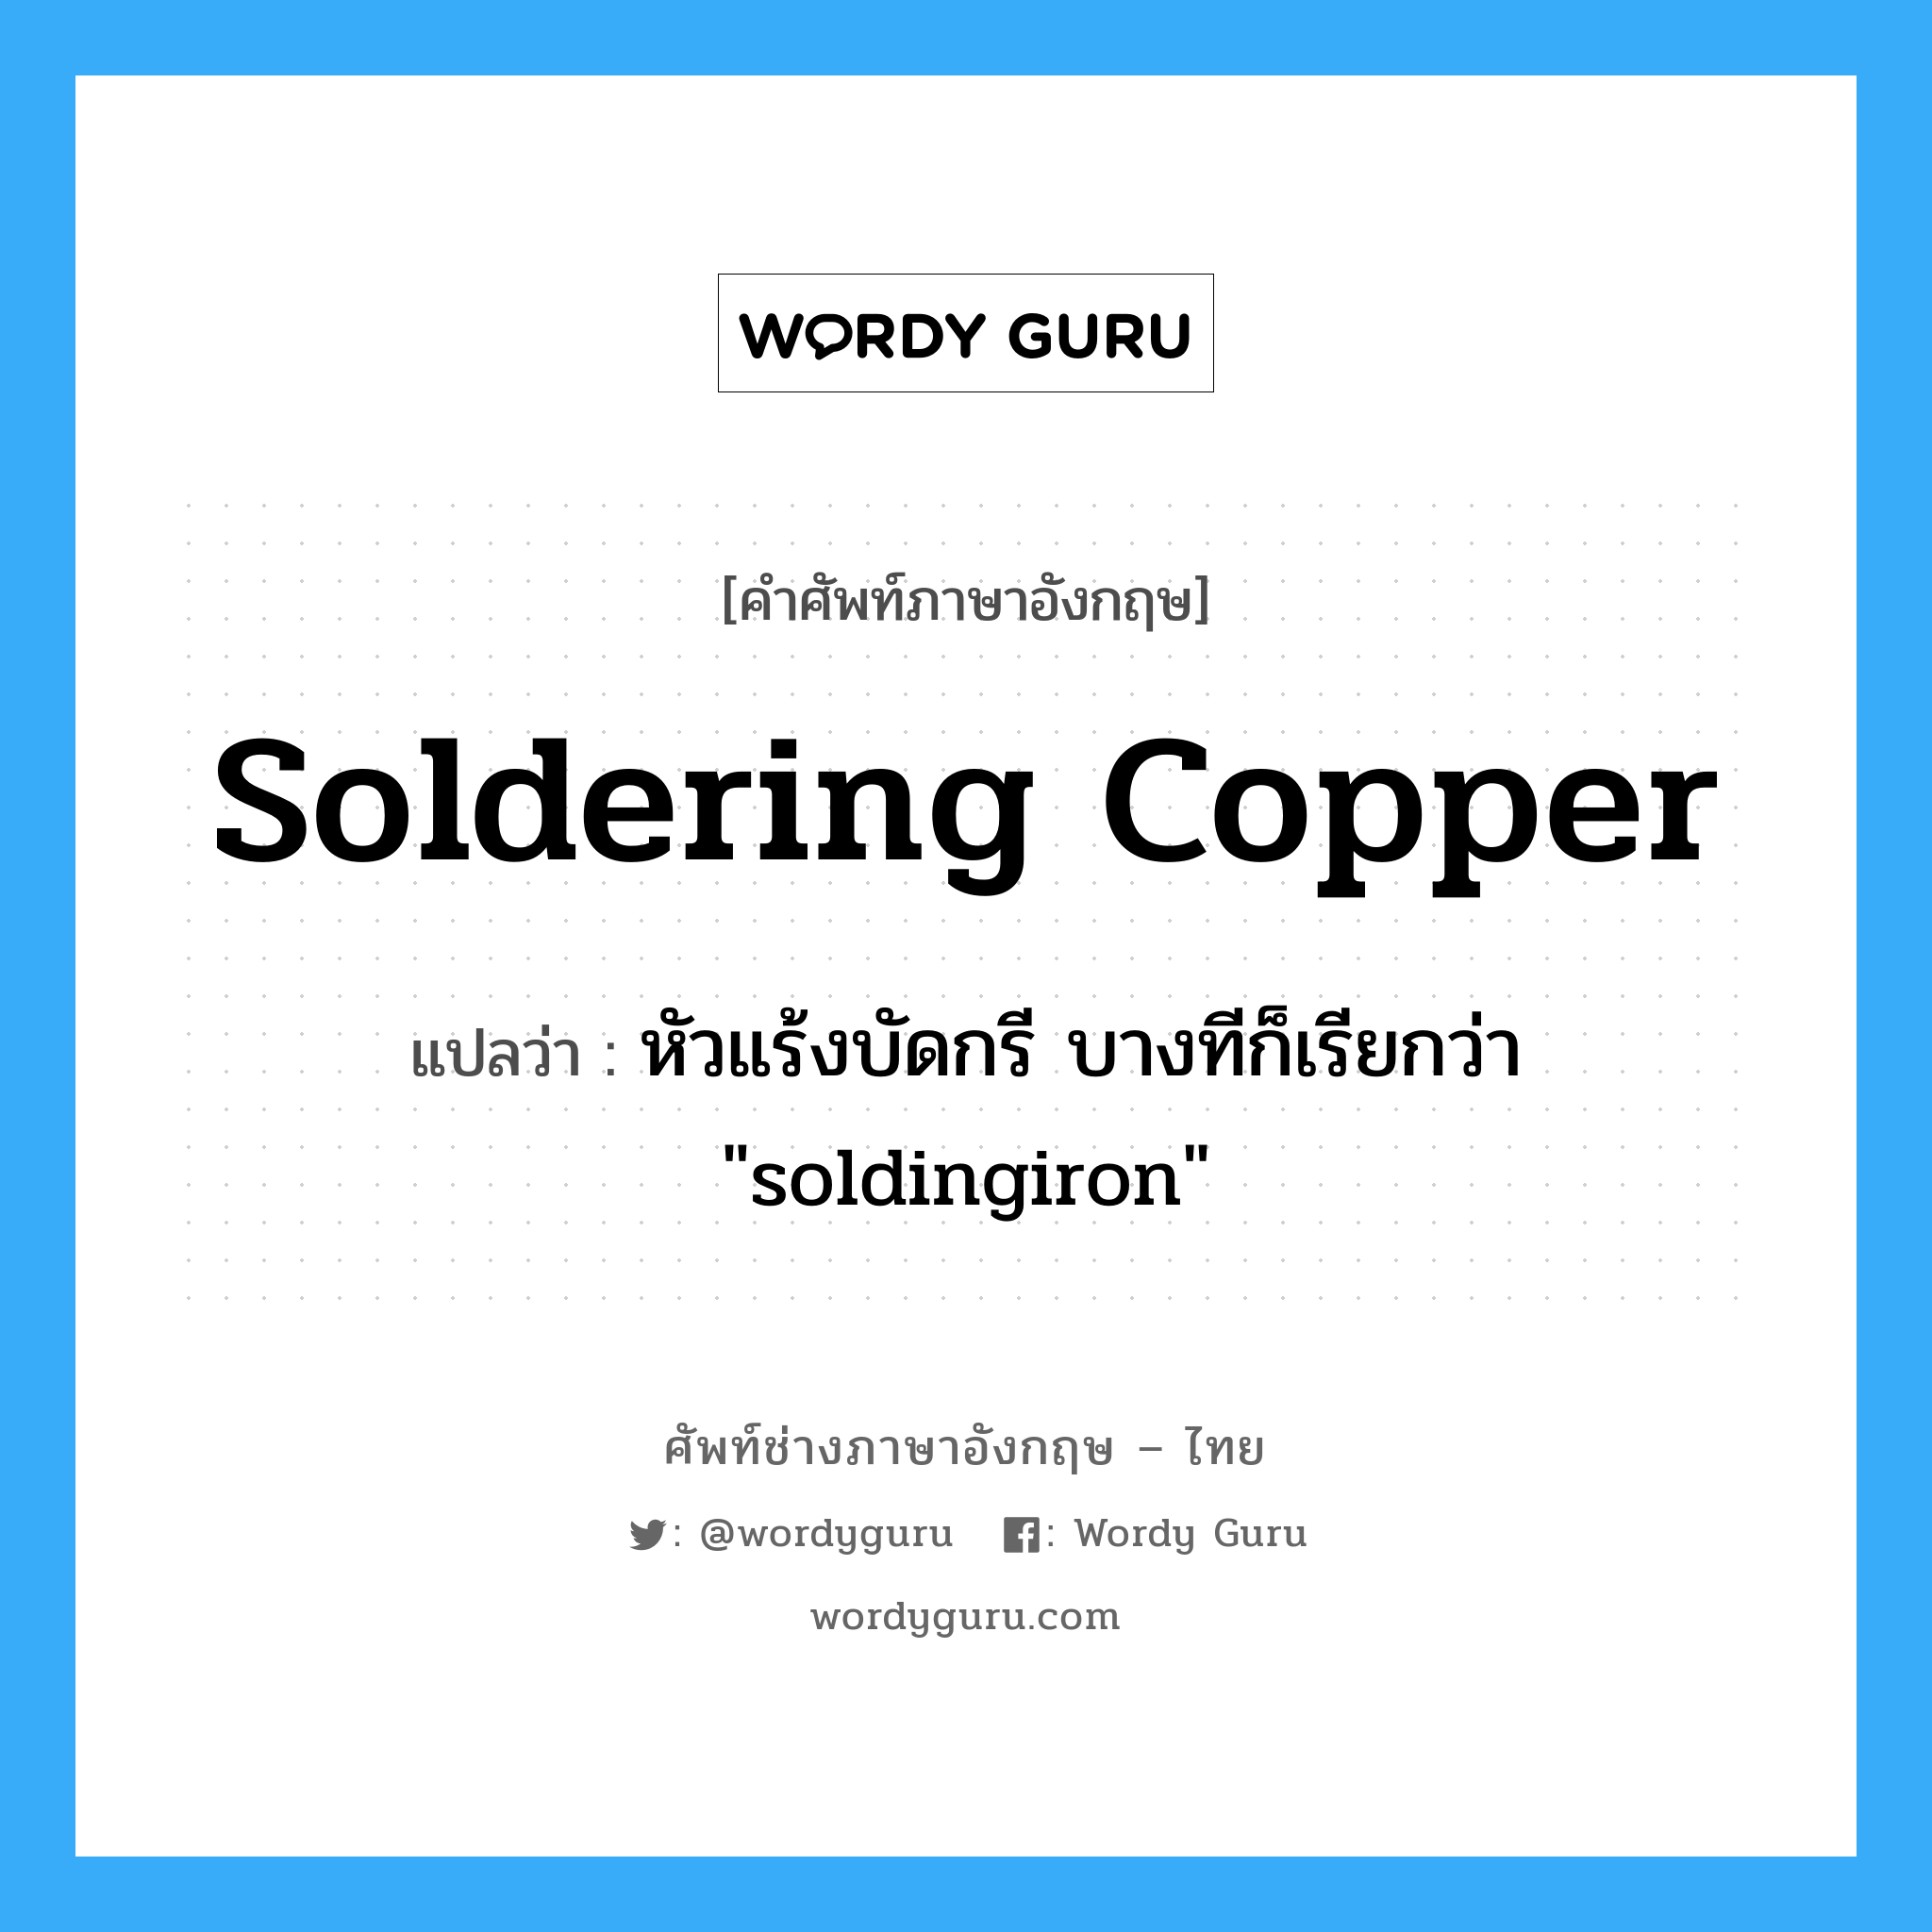 soldering copper แปลว่า?, คำศัพท์ช่างภาษาอังกฤษ - ไทย soldering copper คำศัพท์ภาษาอังกฤษ soldering copper แปลว่า หัวแร้งบัดกรี บางทีก็เรียกว่า "soldingiron"